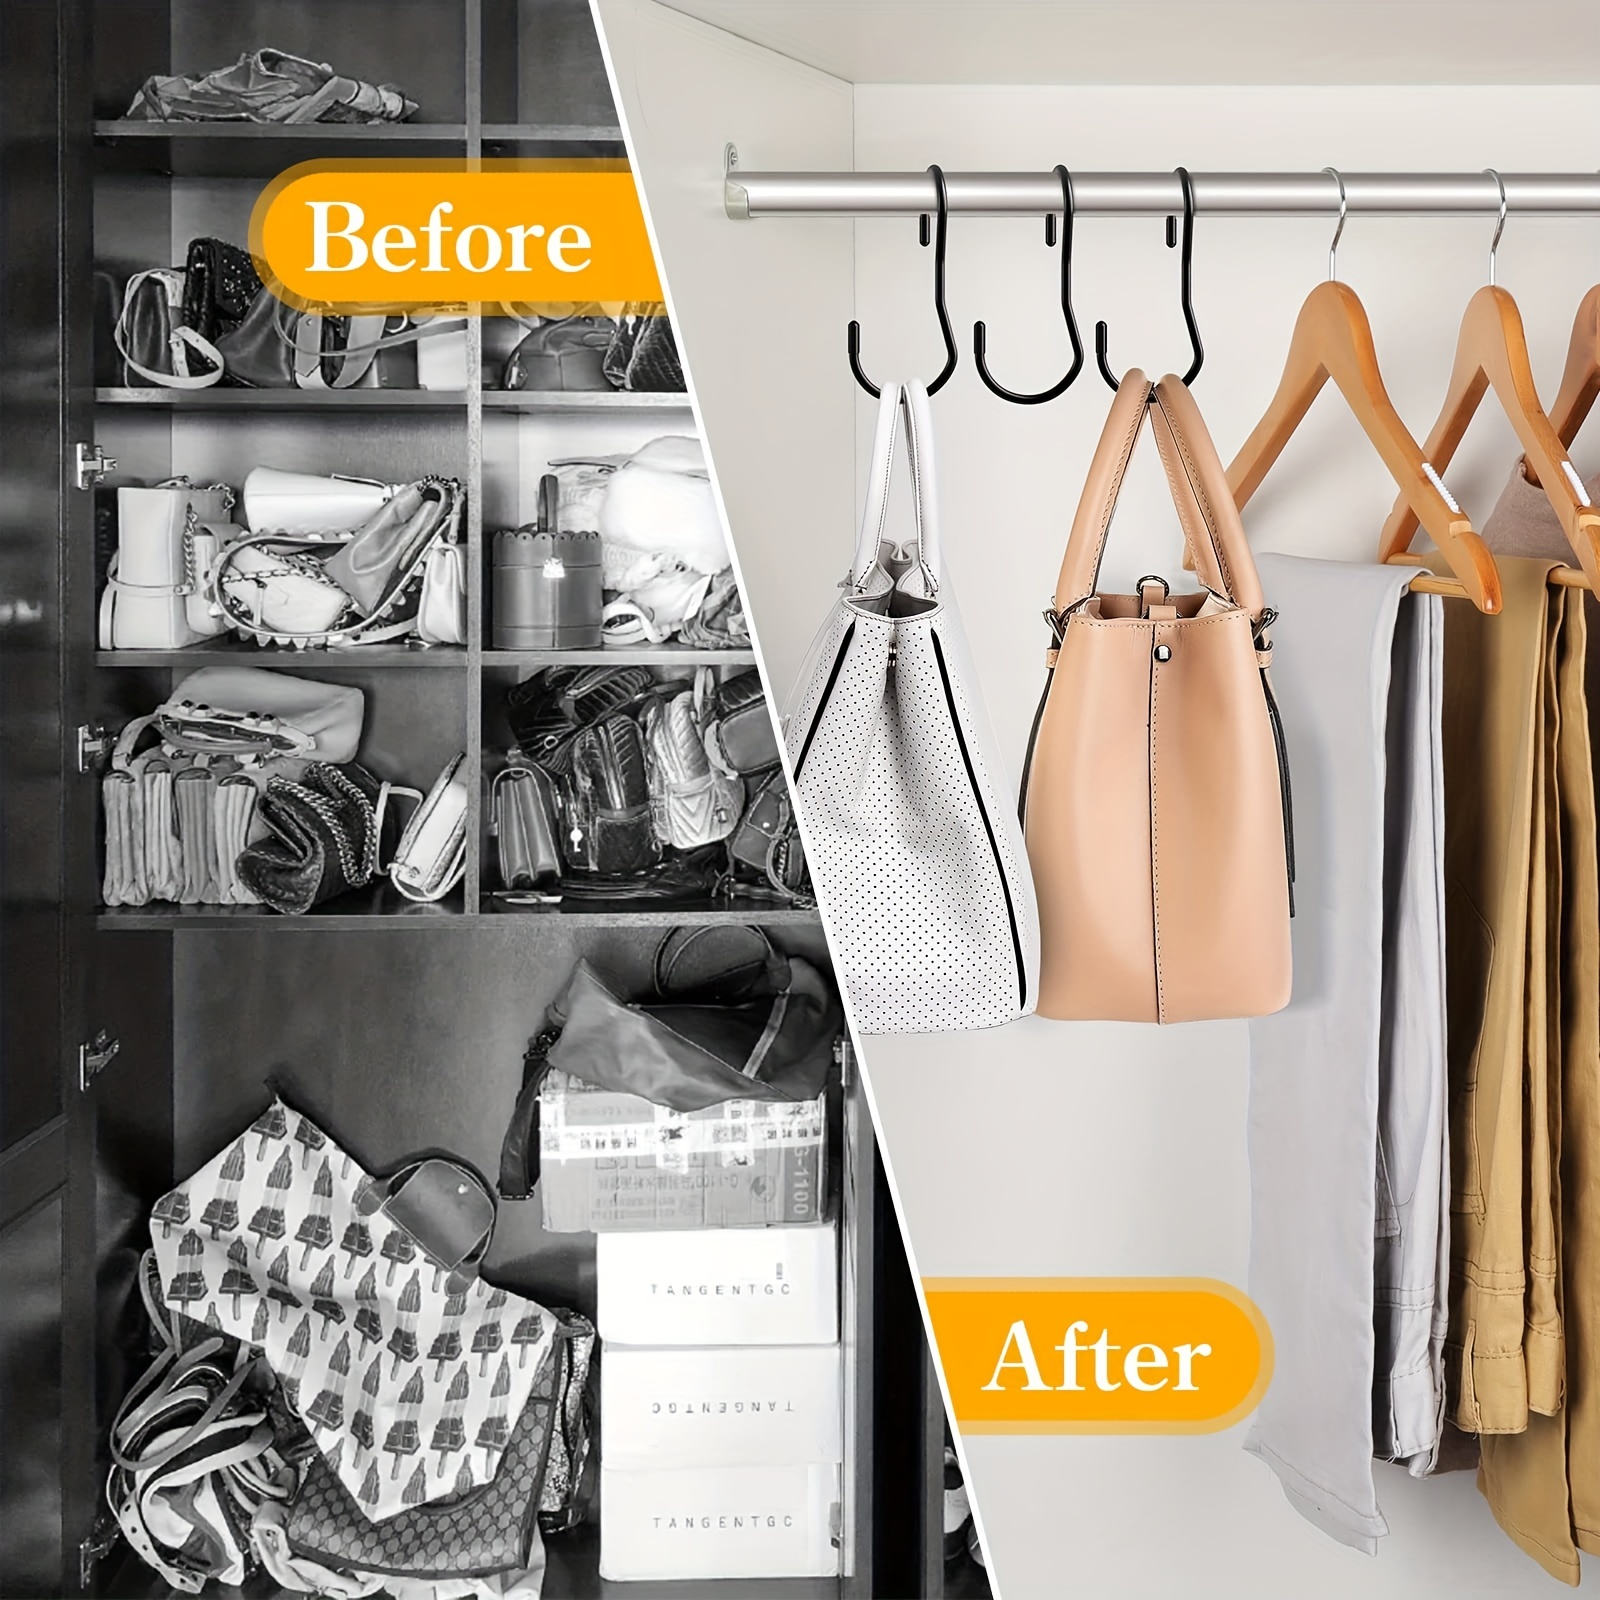  12 Pack Purse Hanger for Closet,Unique Twist Design , Large  Size Closet Rod Hooks for Hanging Bags, Purses, Handbags, Belts, Scarves,  Hats,Clothes, Pans and Pots (Black) : Home & Kitchen